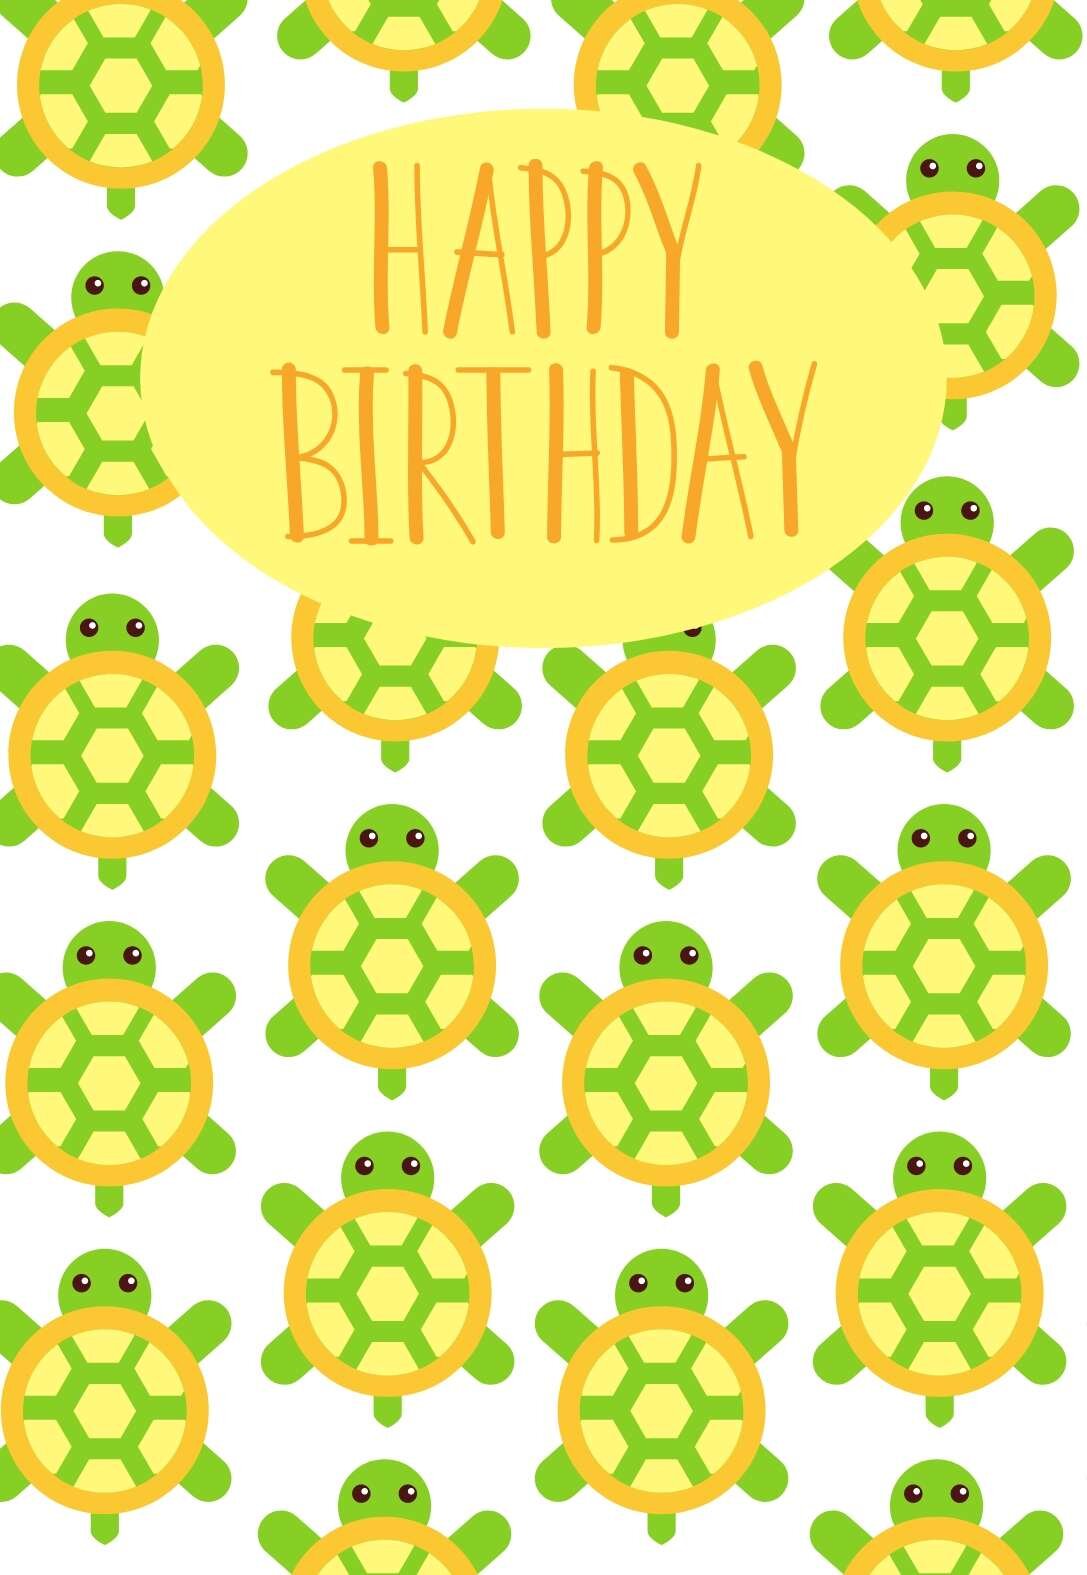 Turtle Printable Birthday Cards — PRINTBIRTHDAY.CARDS